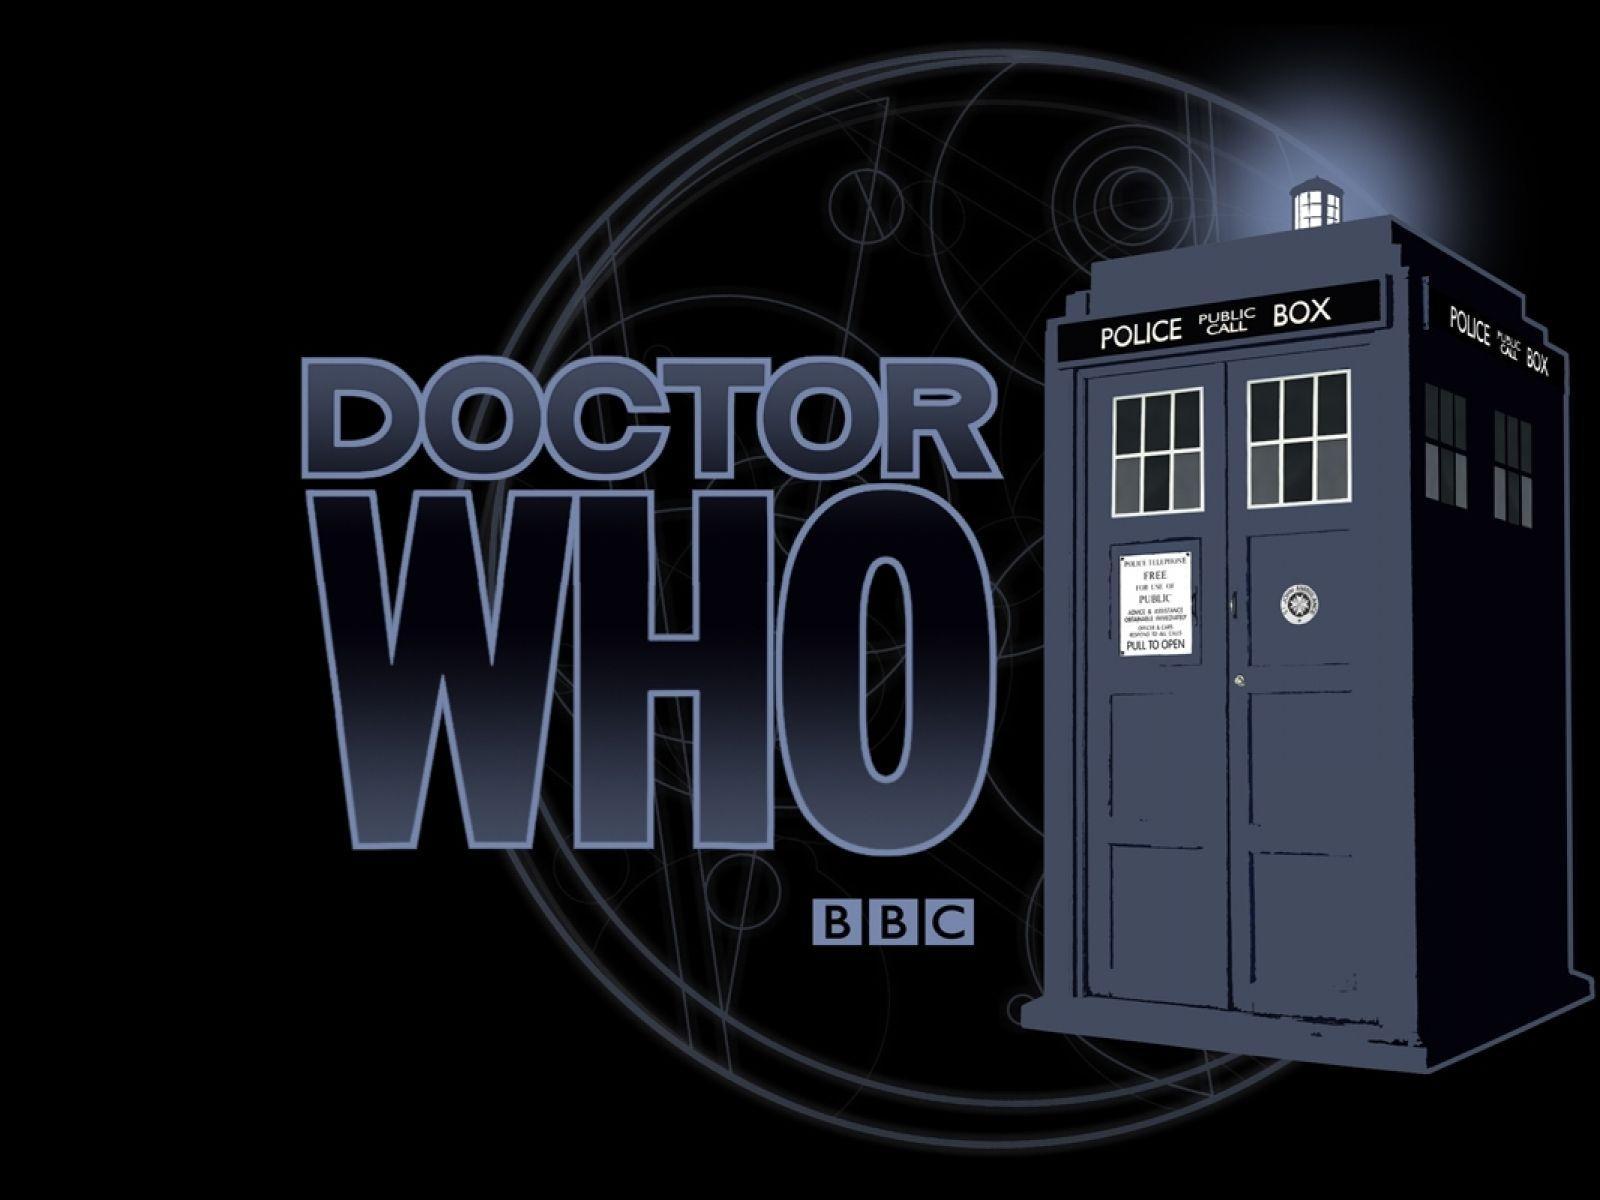 Wallpaper For > Doctor Who Wallpaper Tardis